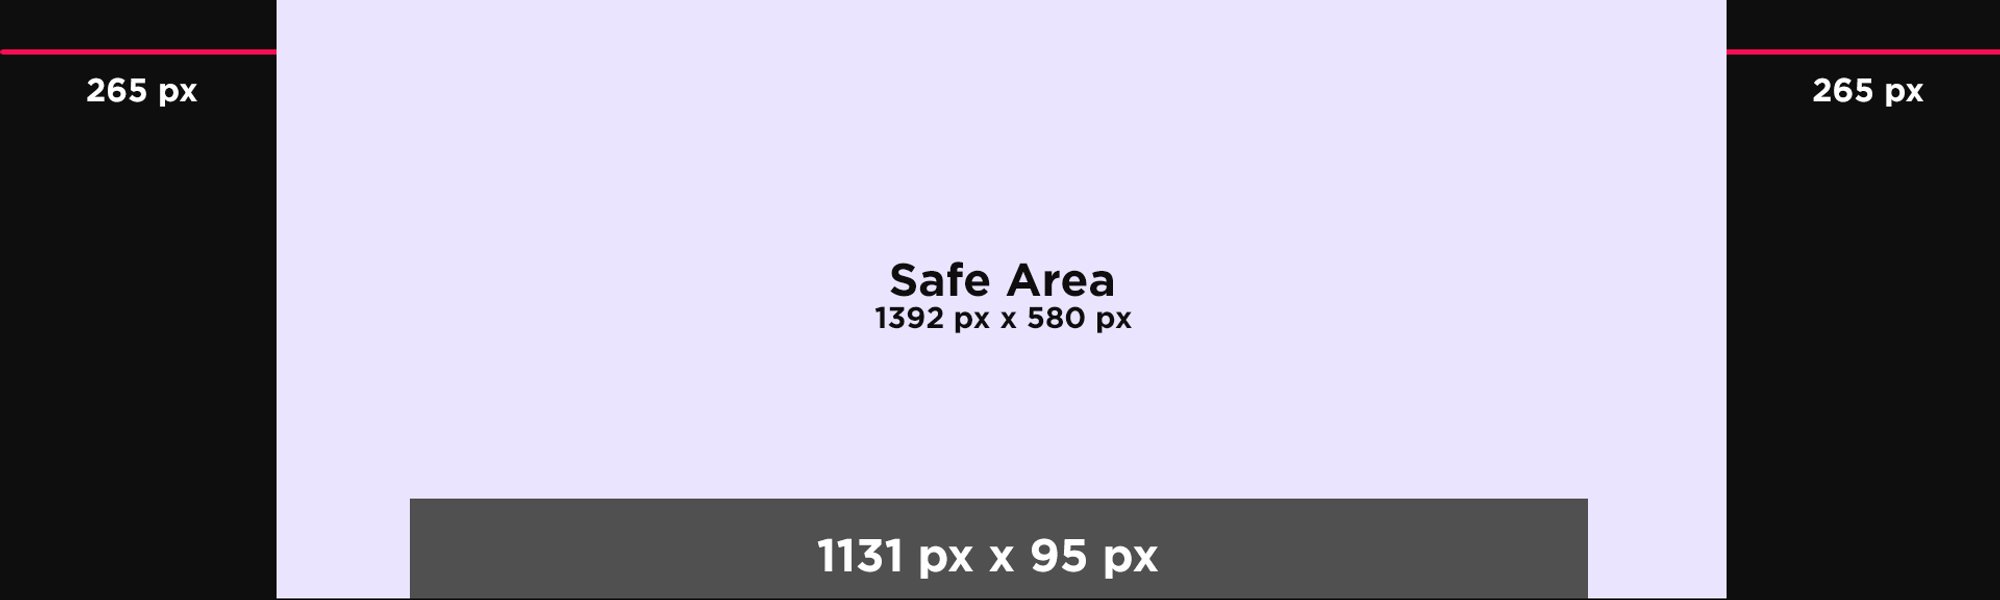 Safe Category Page V4